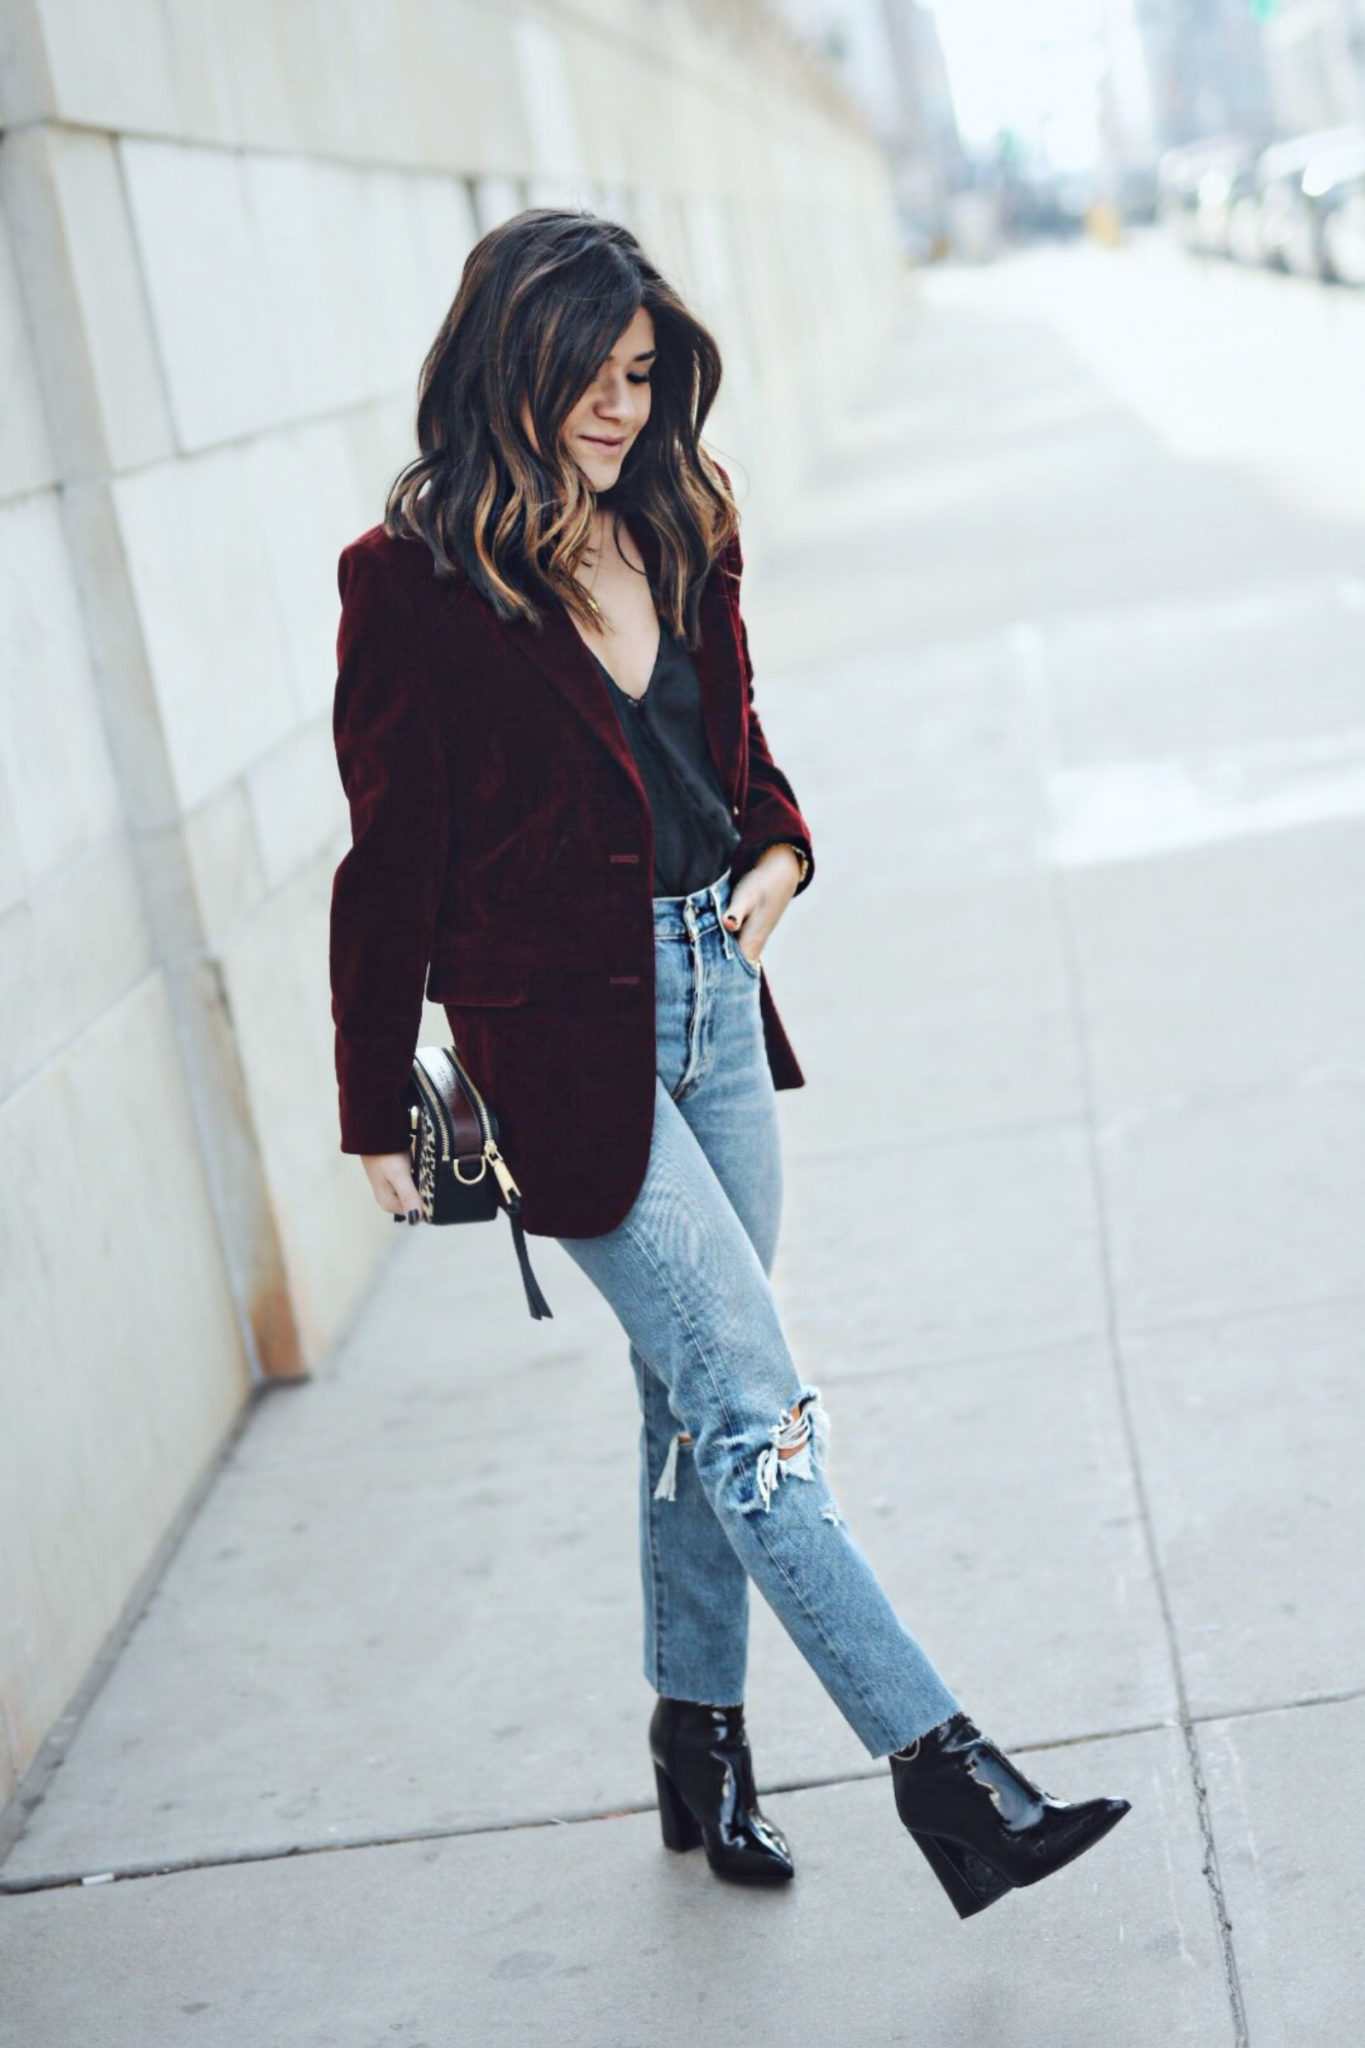 Velvet Jacket And Jeans Outfit - une femme d'un certain âge